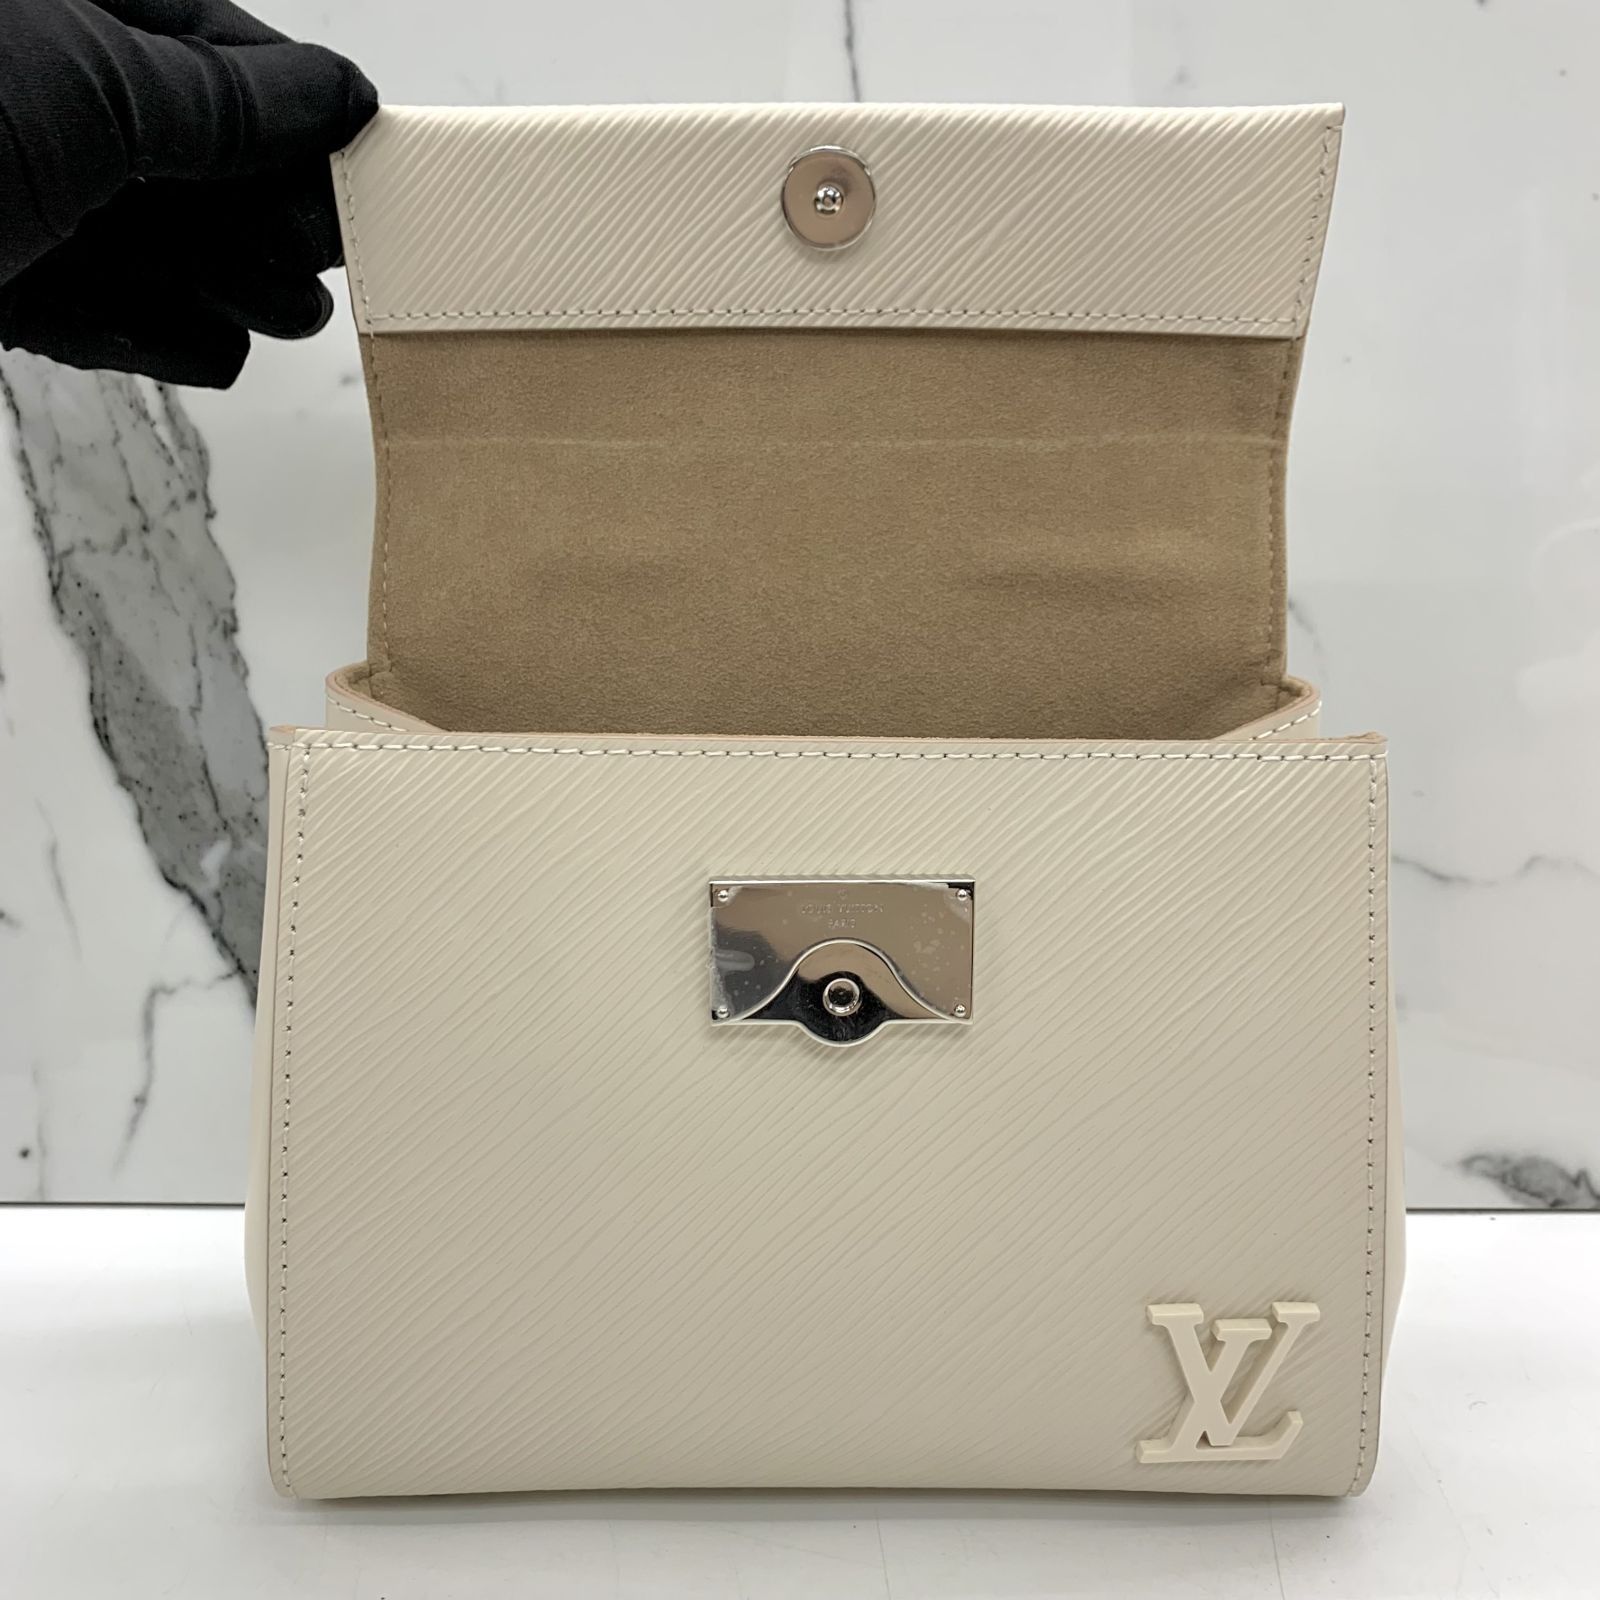 Louis Vuitton Cluny mini bag ✨ حجمها ميني والجلد يتحمل الكرف، في